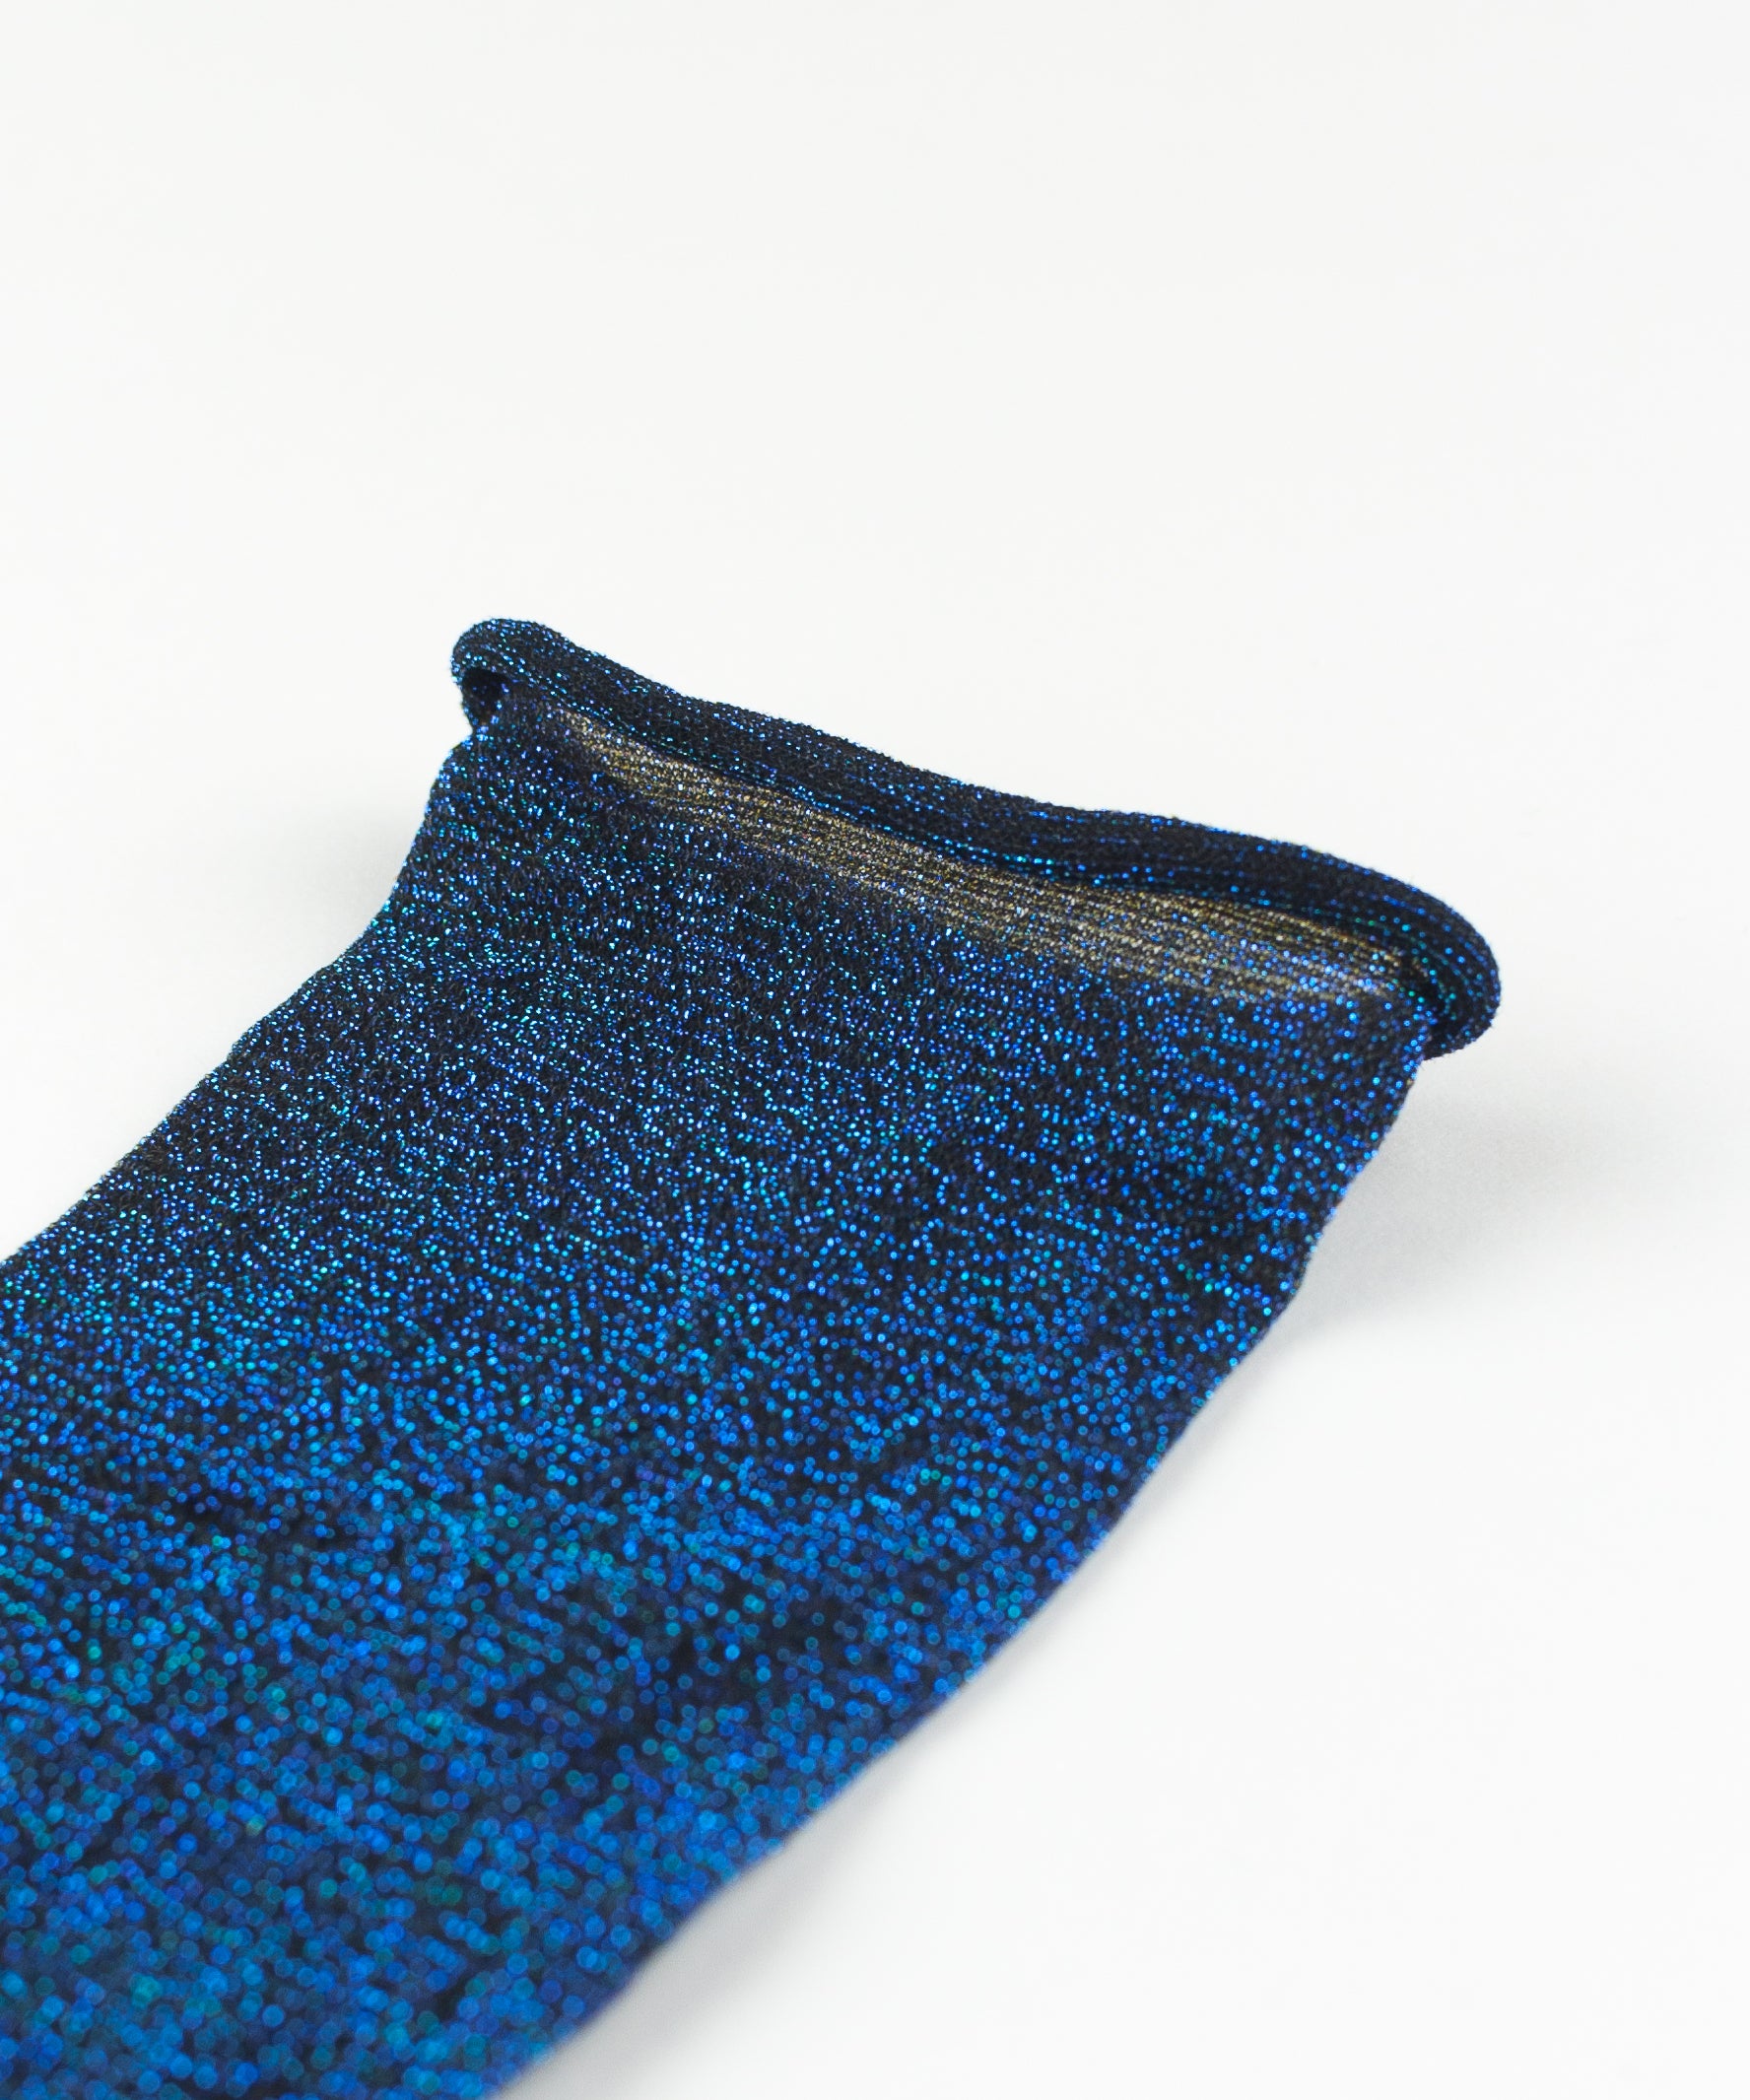 Fili Folli macrame stretch knit socks iridescent